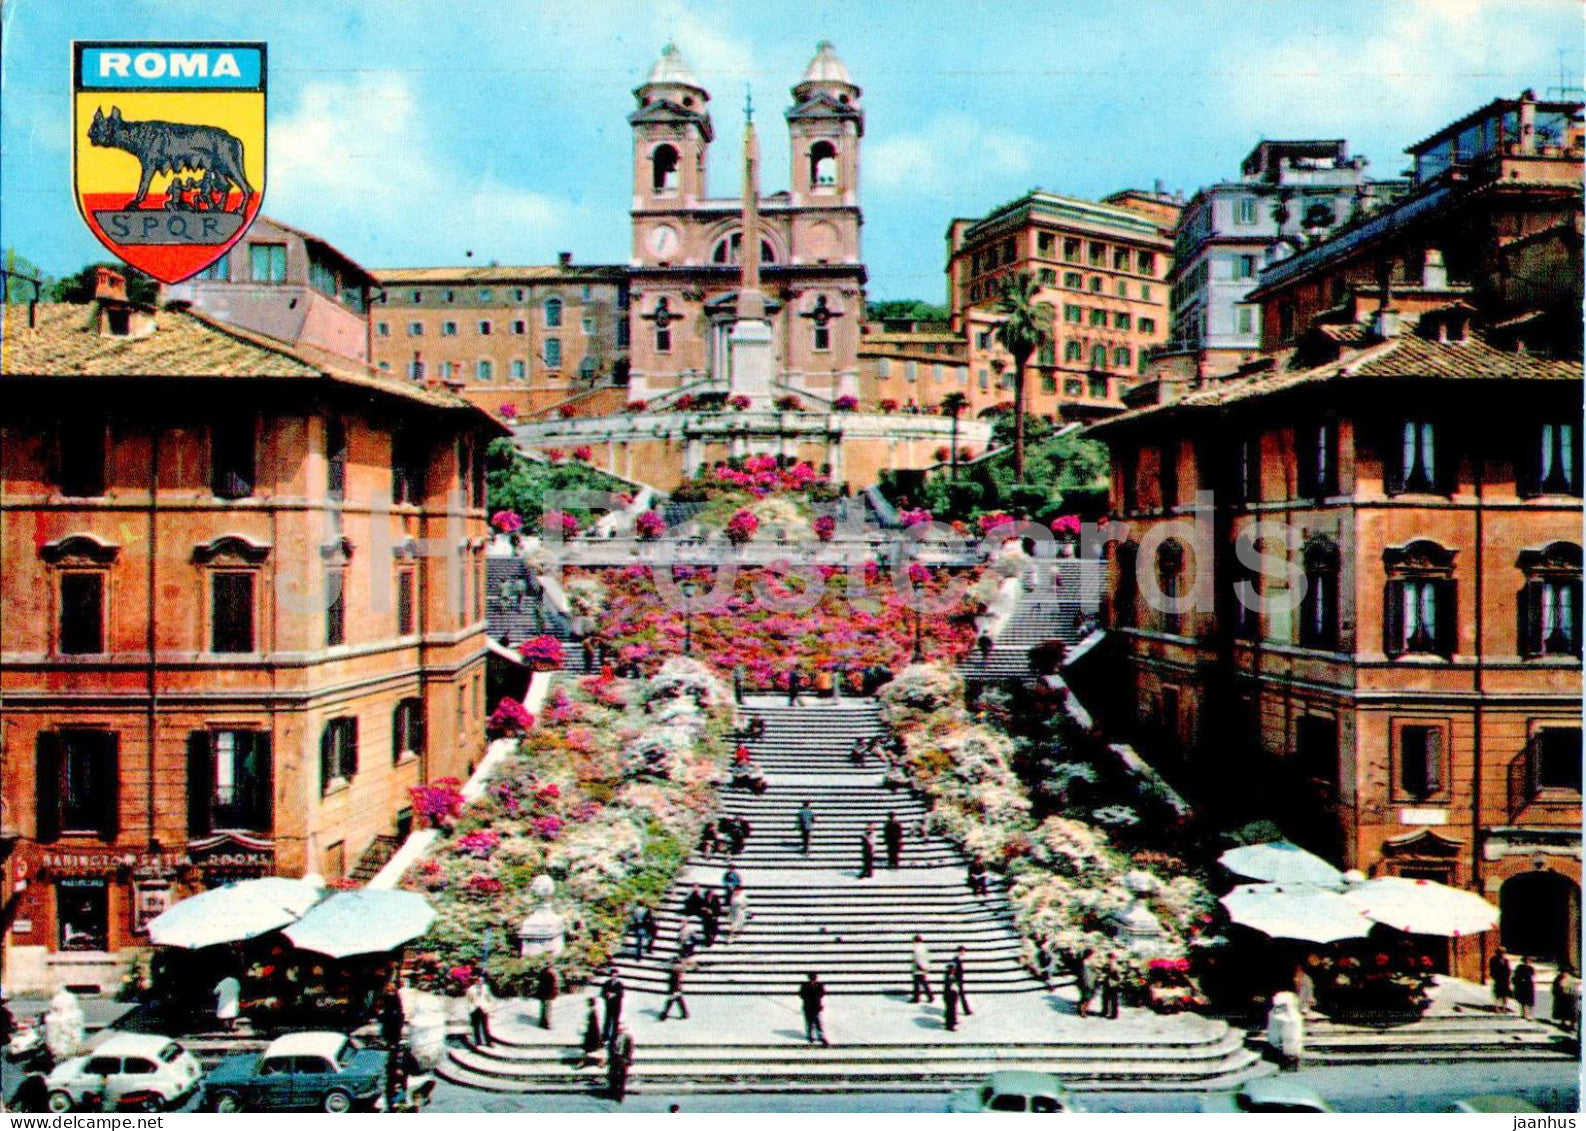 Roma - Rome - Piazza di Spagna - Trinita dei Monti - Spain's Square - 258 - 1967 - Italy - used - JH Postcards